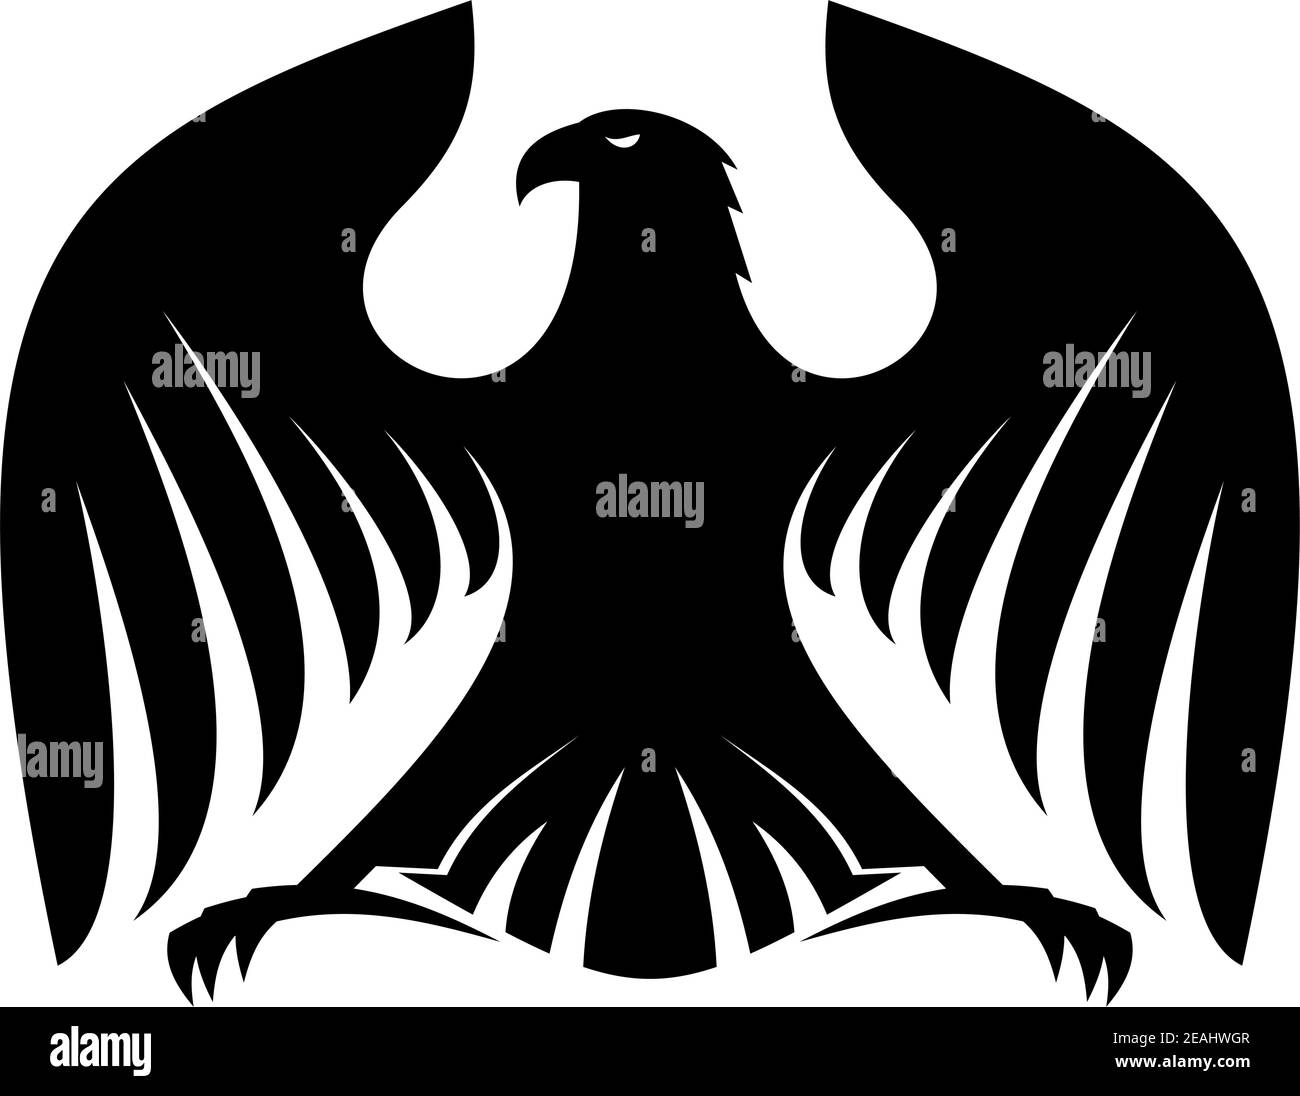 Potente silhouette di aquila nera stilizzata con ali e artigli sparsi e la sua testa girò lateralmente per il design eraldry Illustrazione Vettoriale